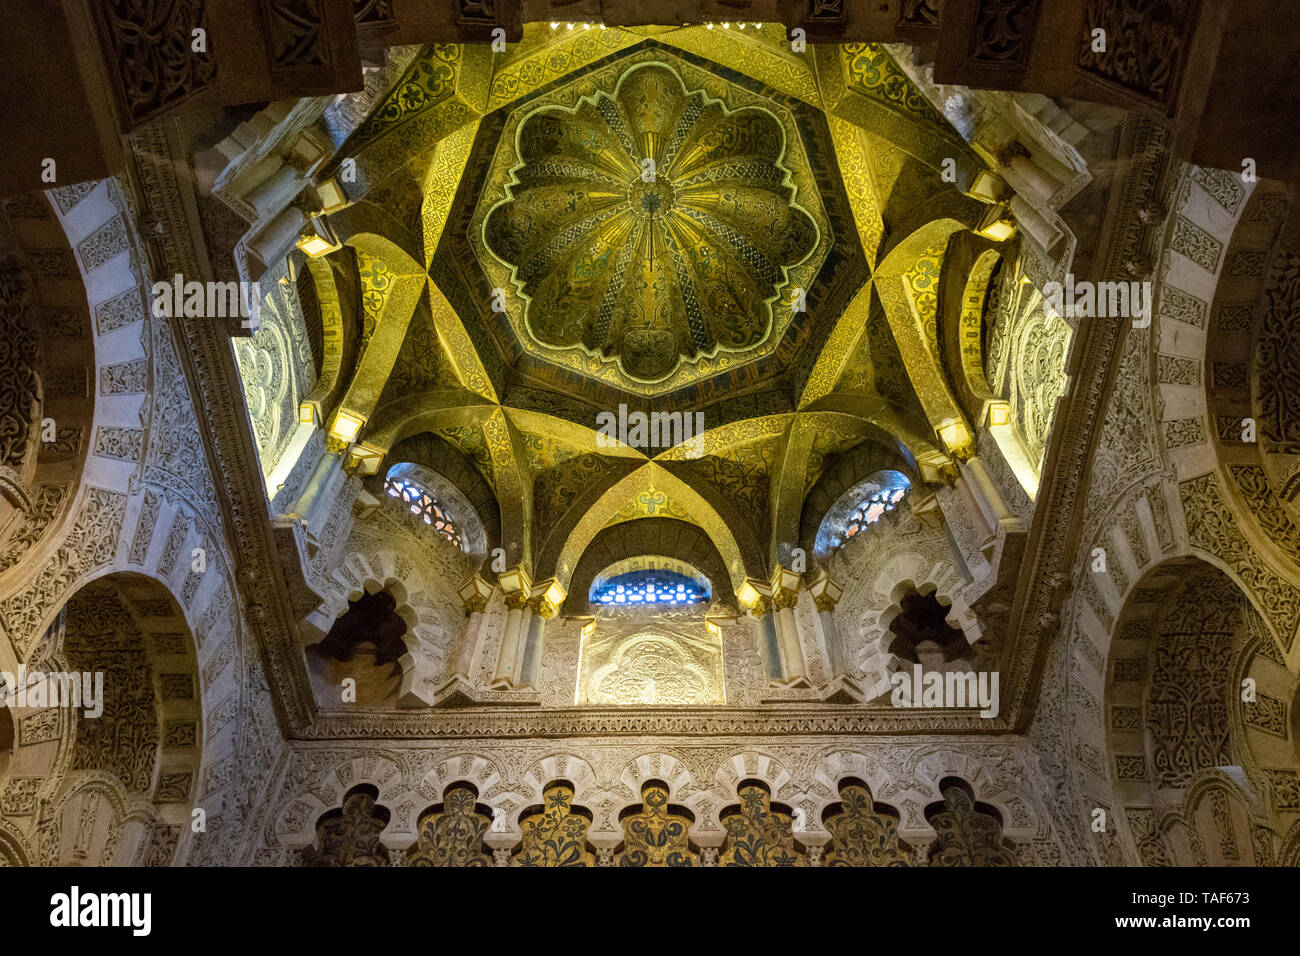 Dekorative Decke innerhalb einer Kuppel aus maurischen Moschee-Kathedrale von Córdoba, Córdoba, Region Andalusien, Spanien Stockfoto